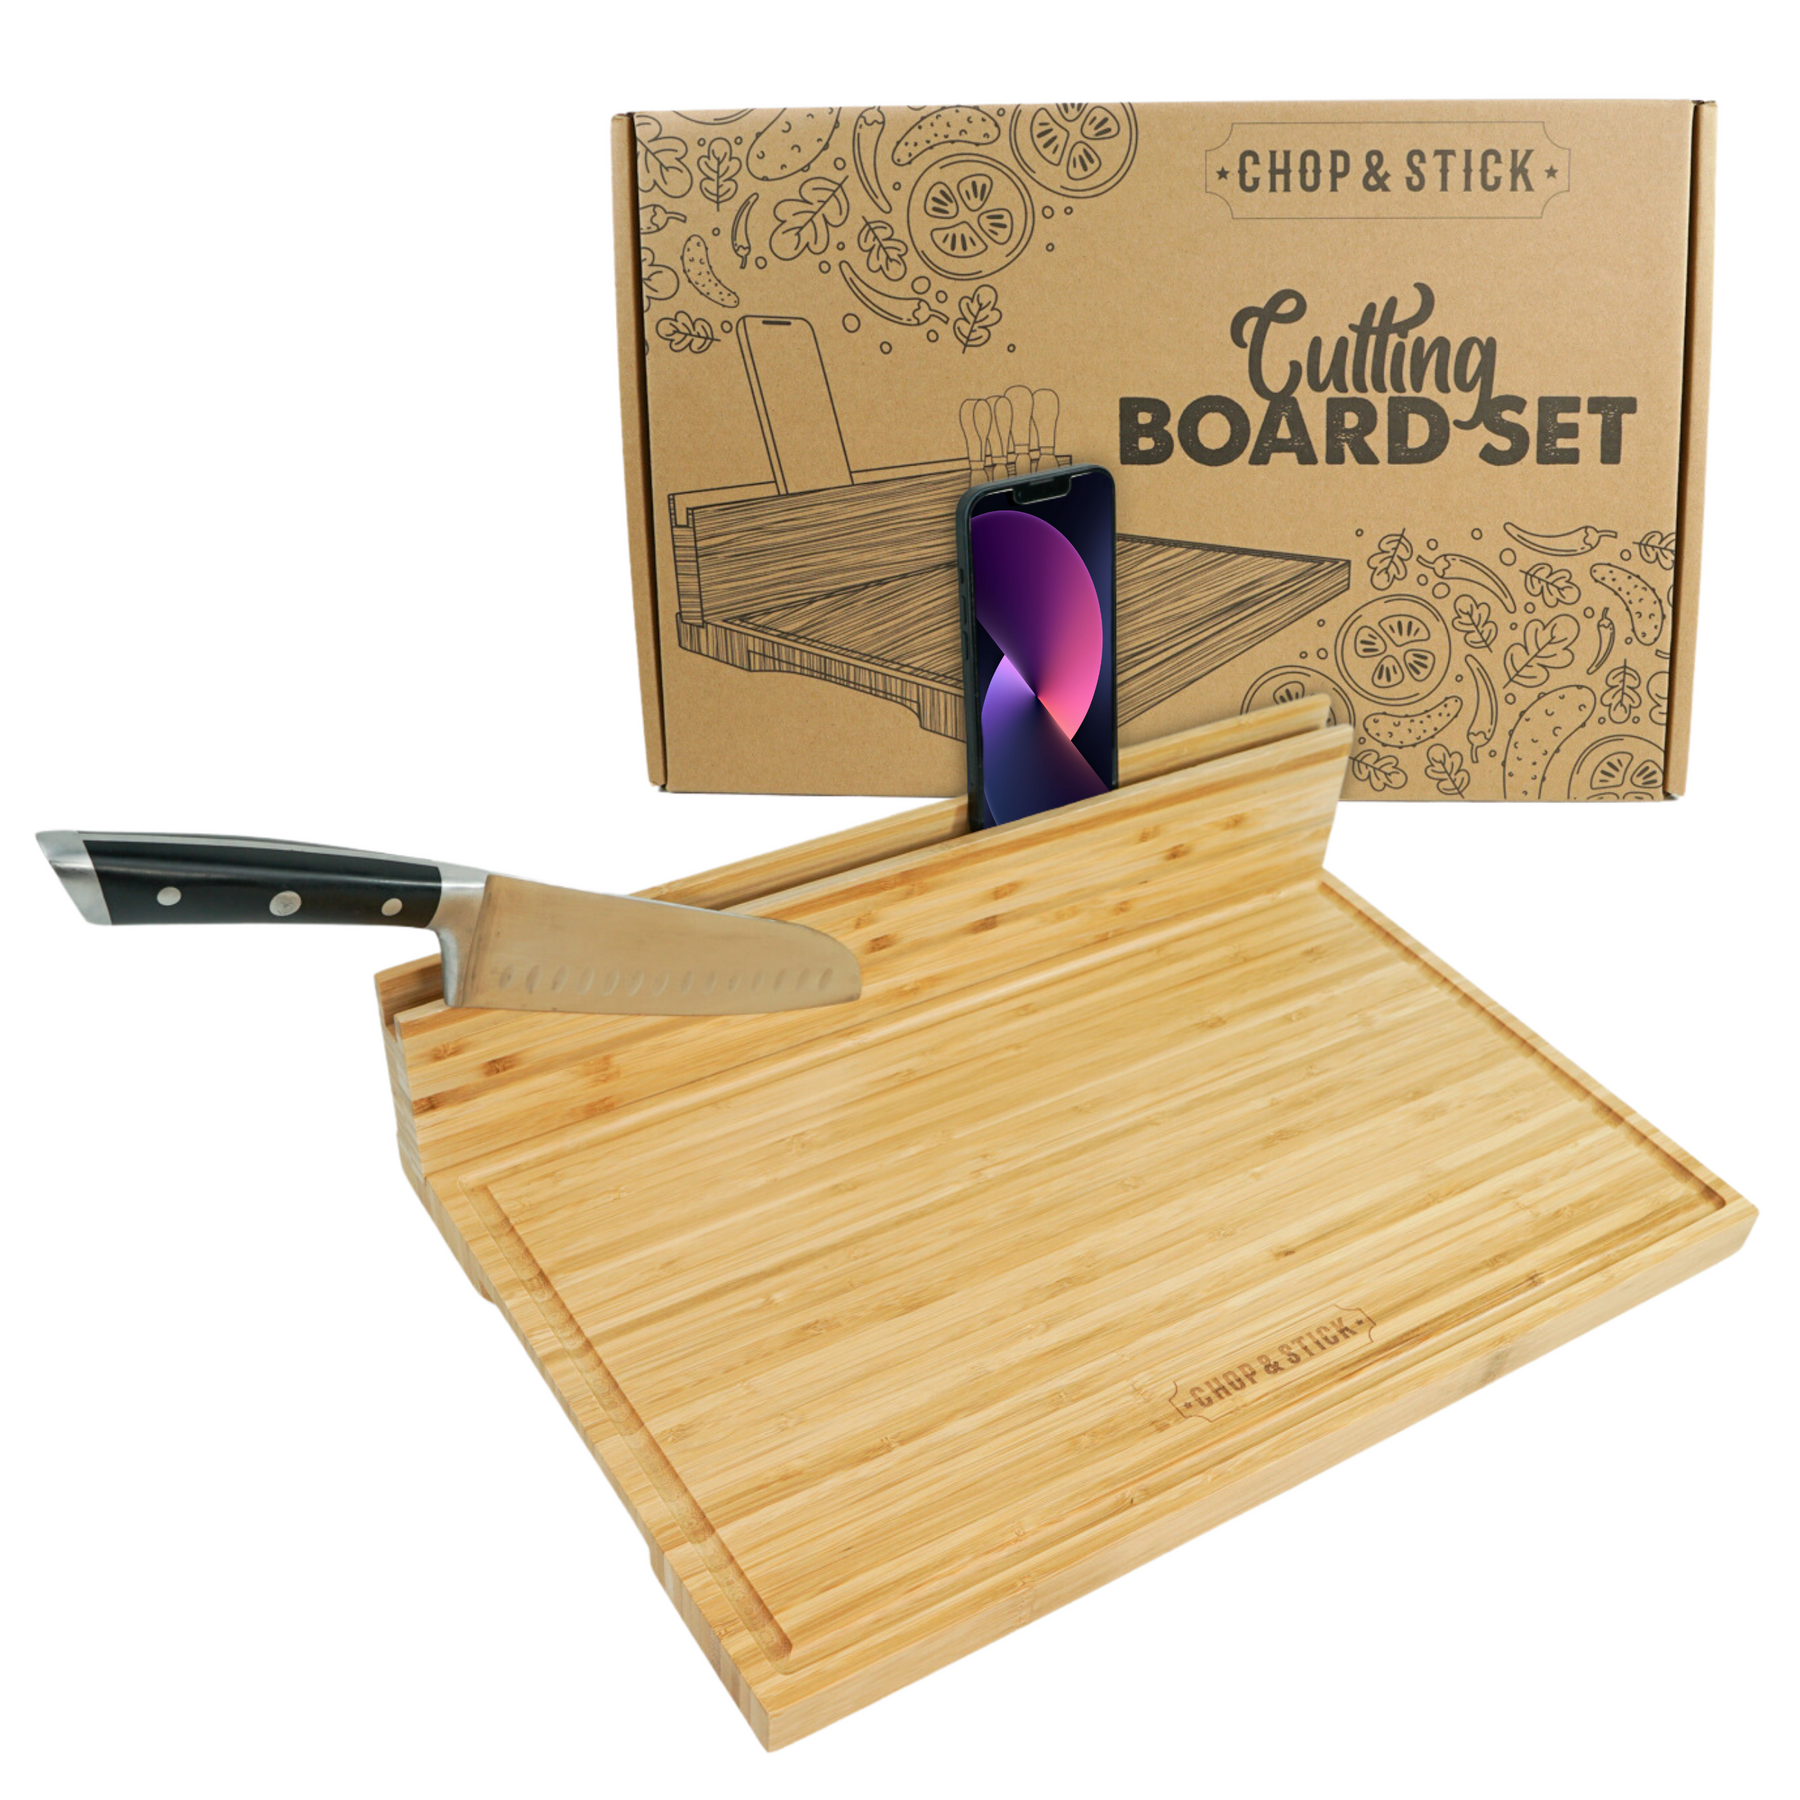 Buy Cutting board set